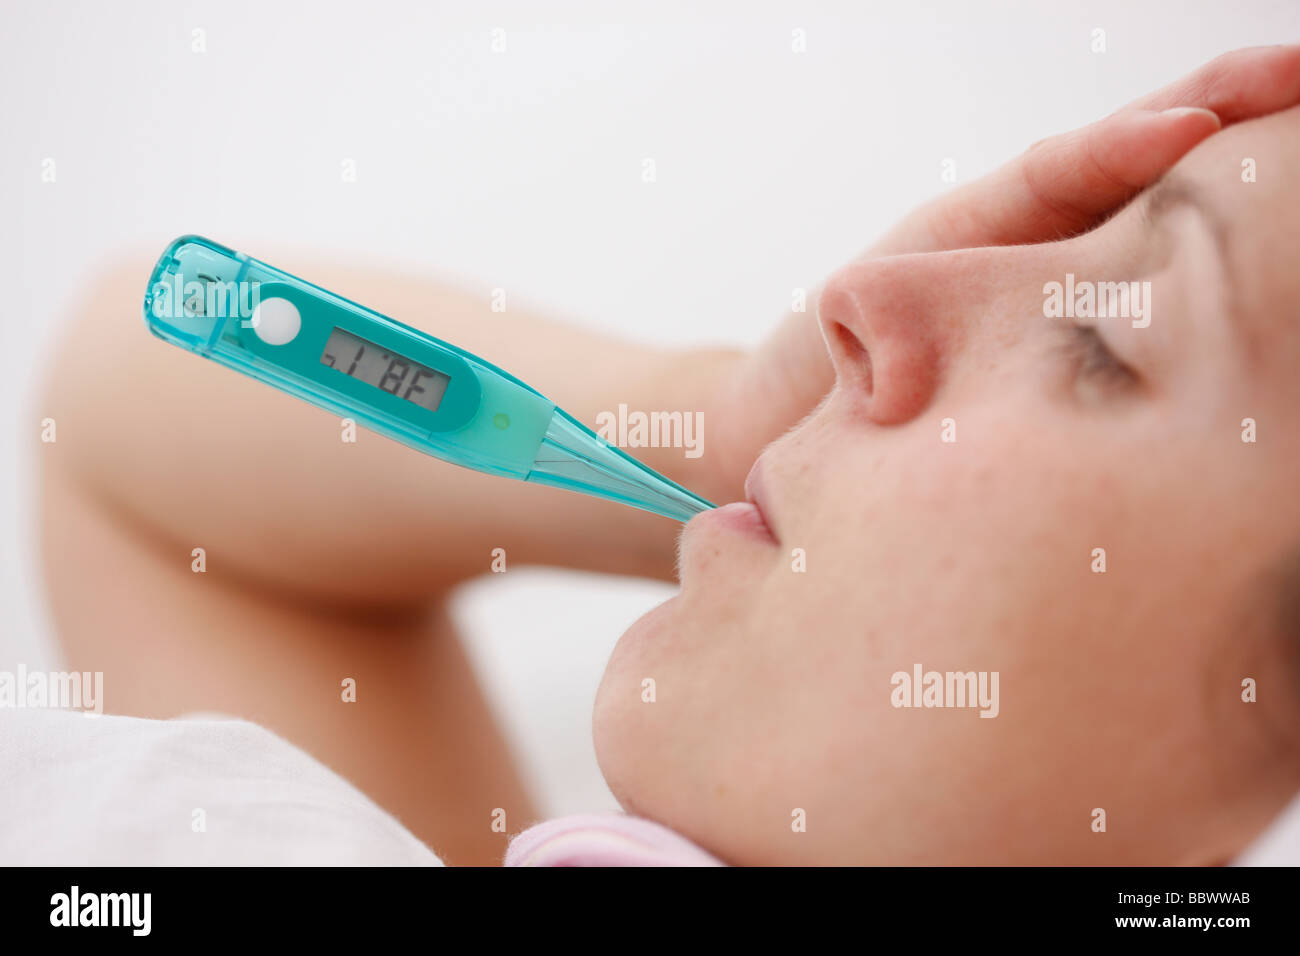 Frau zu Hause krank mit Fieber im Bett, verwendet ein Fieberthermometer für die Messung der Körpertemperatur. Stockfoto